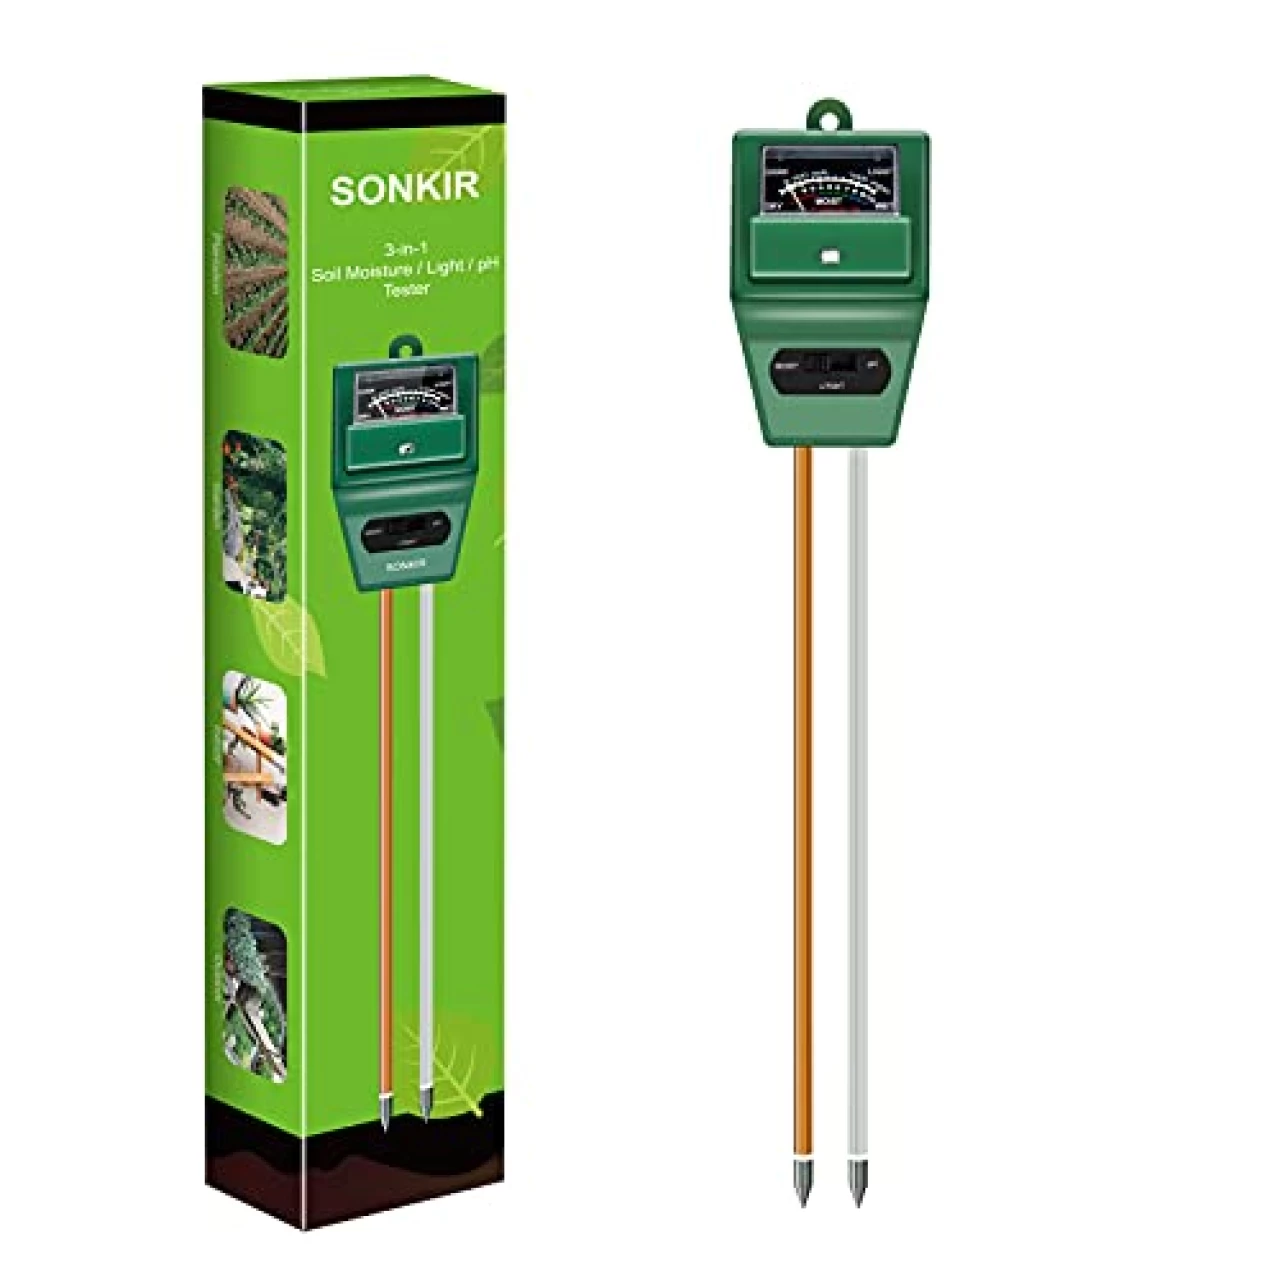 SONKIR Soil pH Meter, MS02 3-in-1 Soil Moisture/Light/pH Tester Gardening Tool Kits for Plant Care, Great for Garden, Lawn, Farm, Indoor &amp; Outdoor Use (Green)